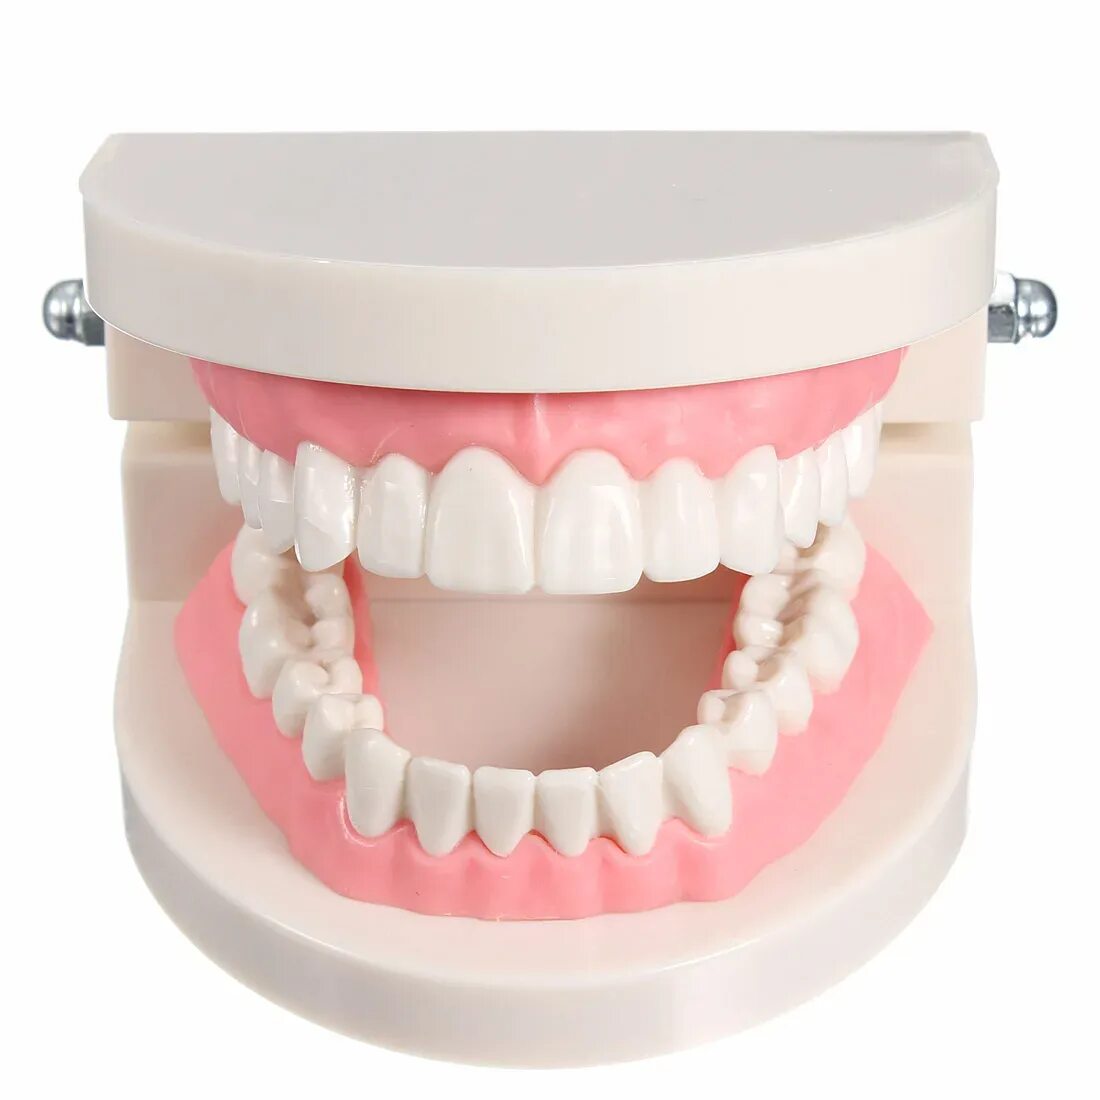 Модель зубов. Муляж зубов. Модель челюсти с зубами. Искусственная челюсть. Расширение челюсти цена